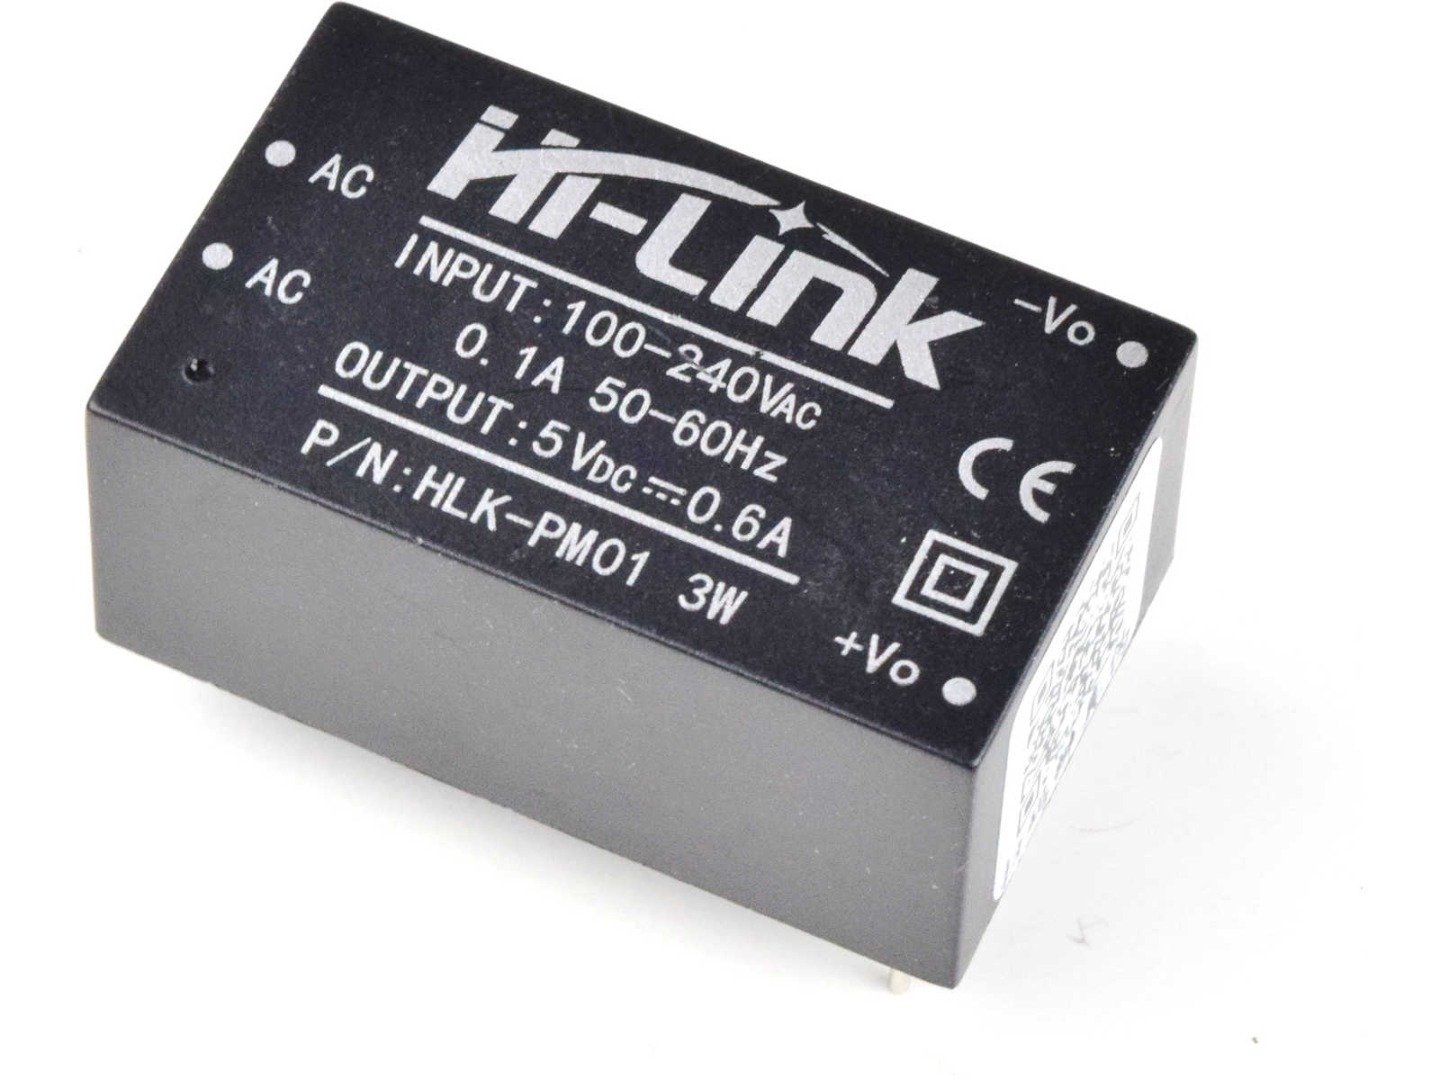 AC-DC Converter HLK-PM01 100-240V to 5V 0.6A 3W – Encapsulated Power Supply for PCB 4